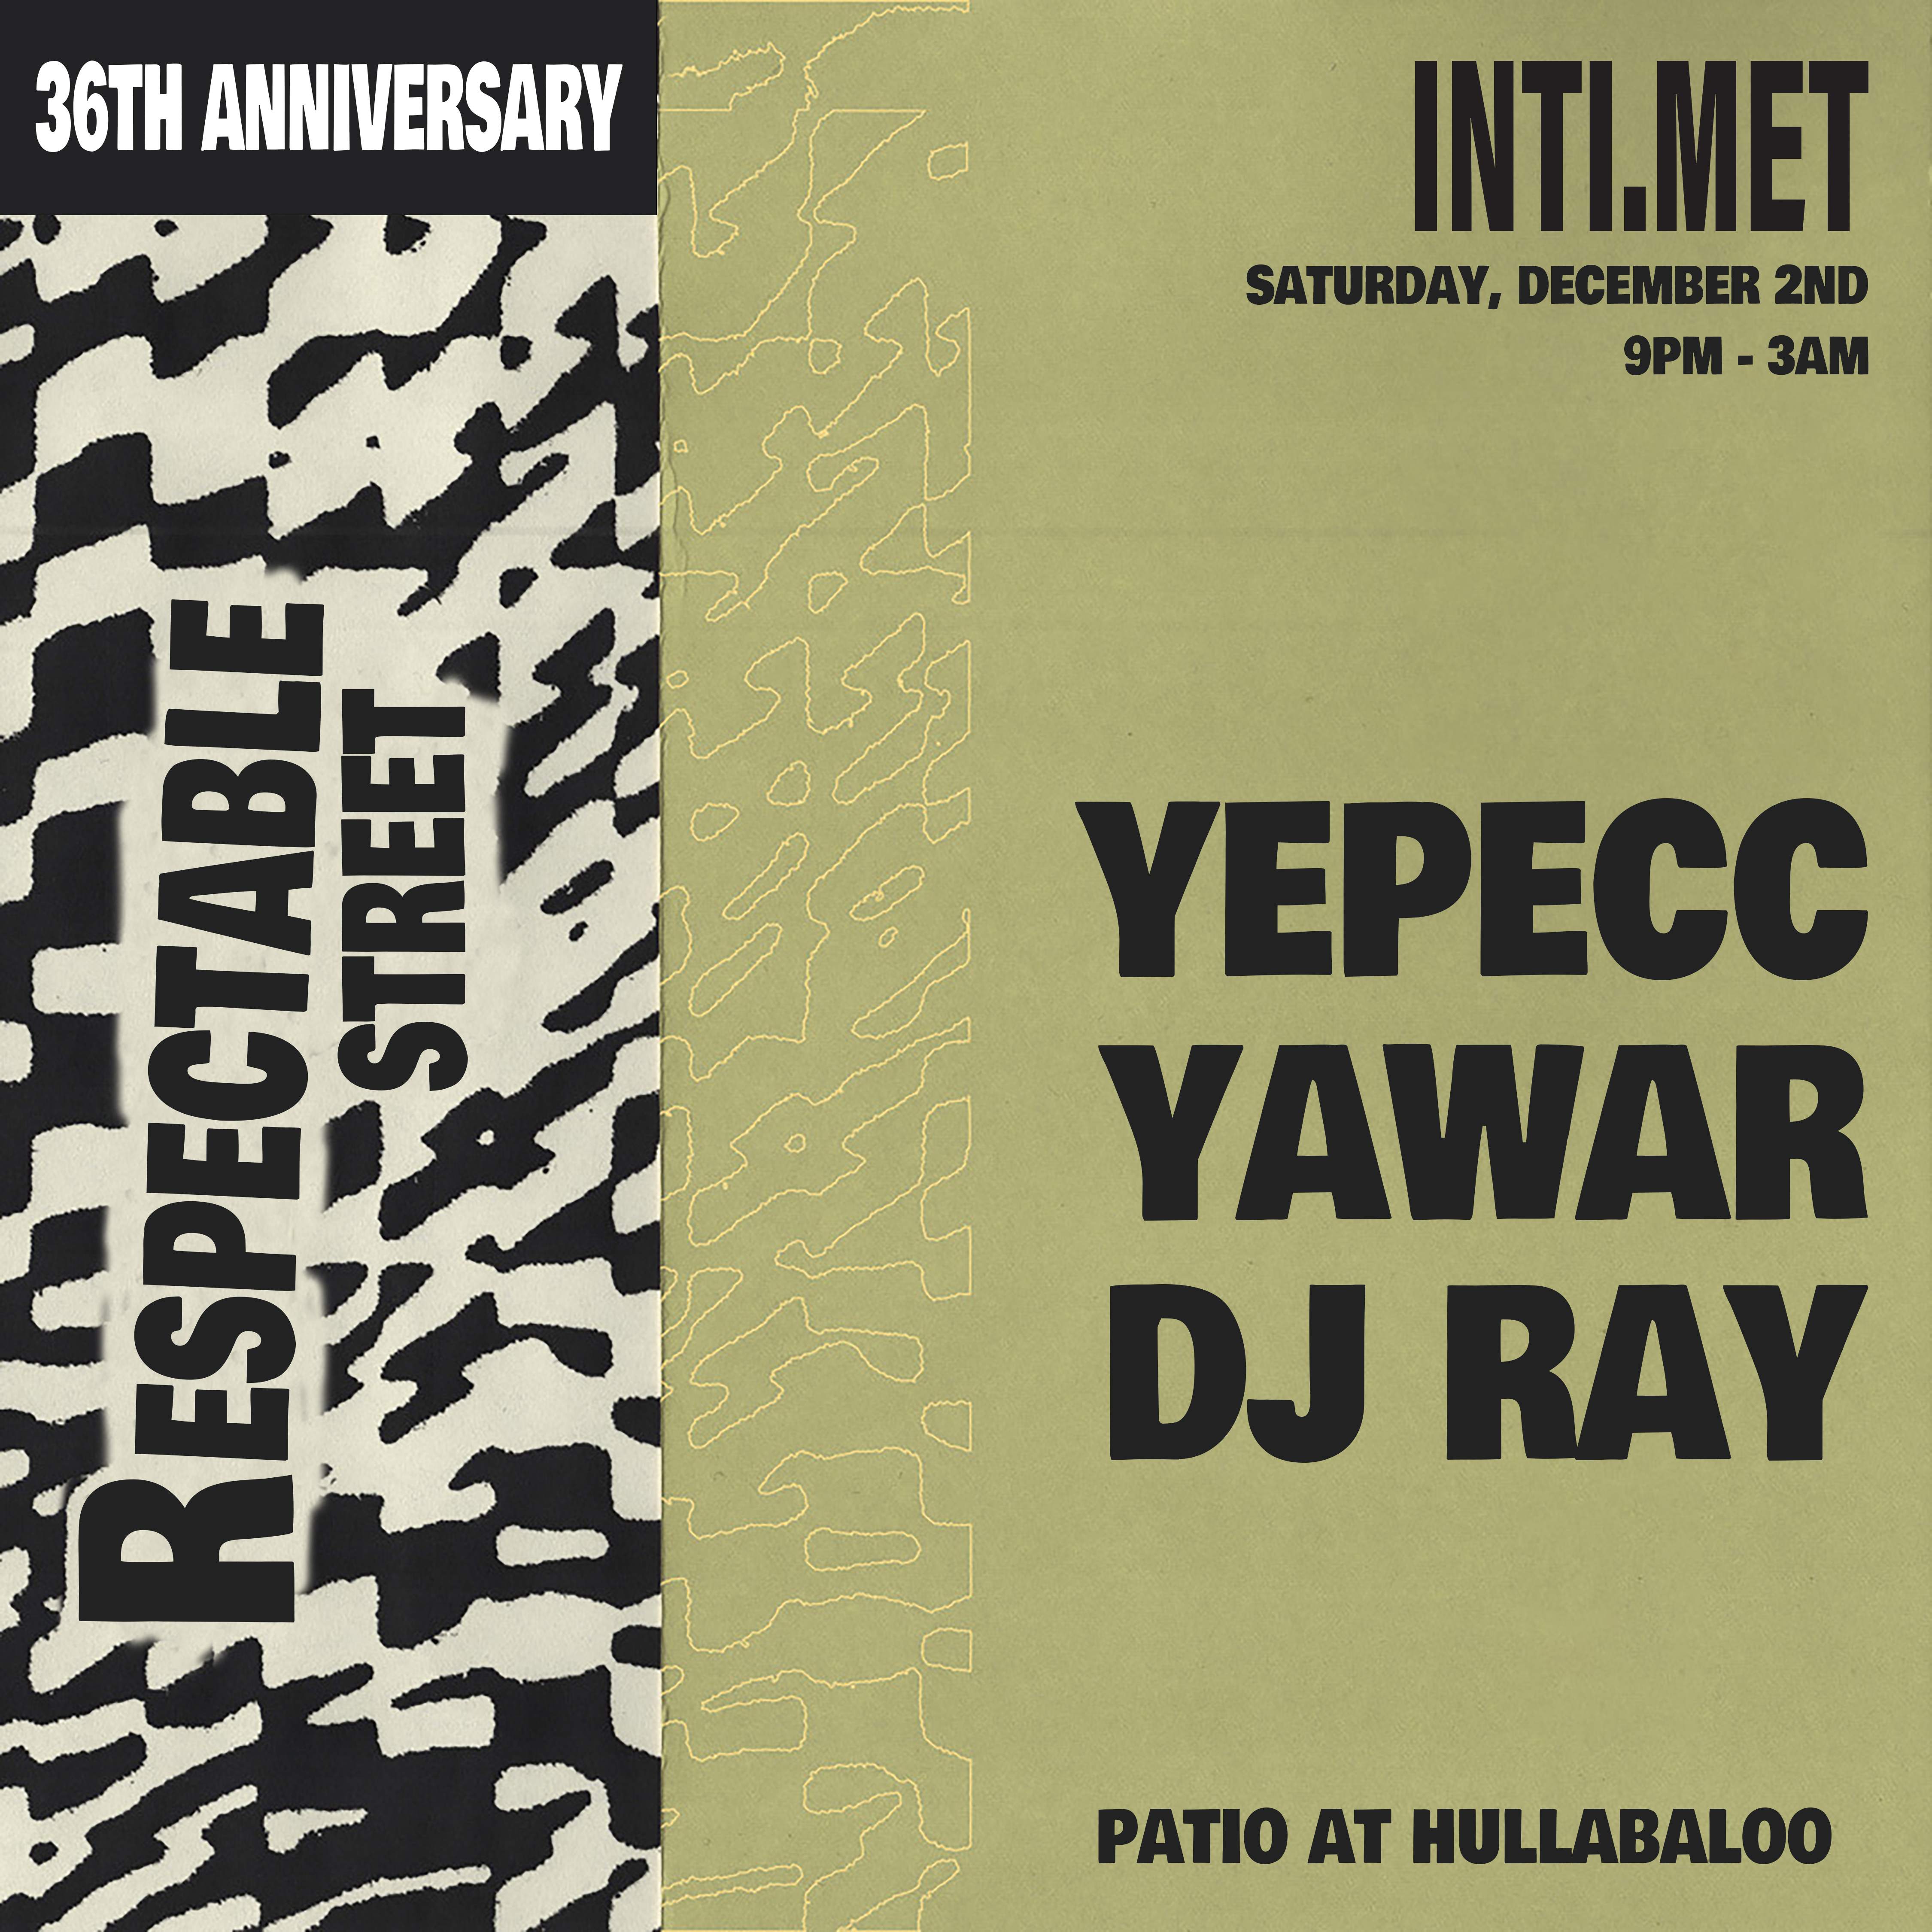 DJ Ray, Yawar & yepecc - Página frontal